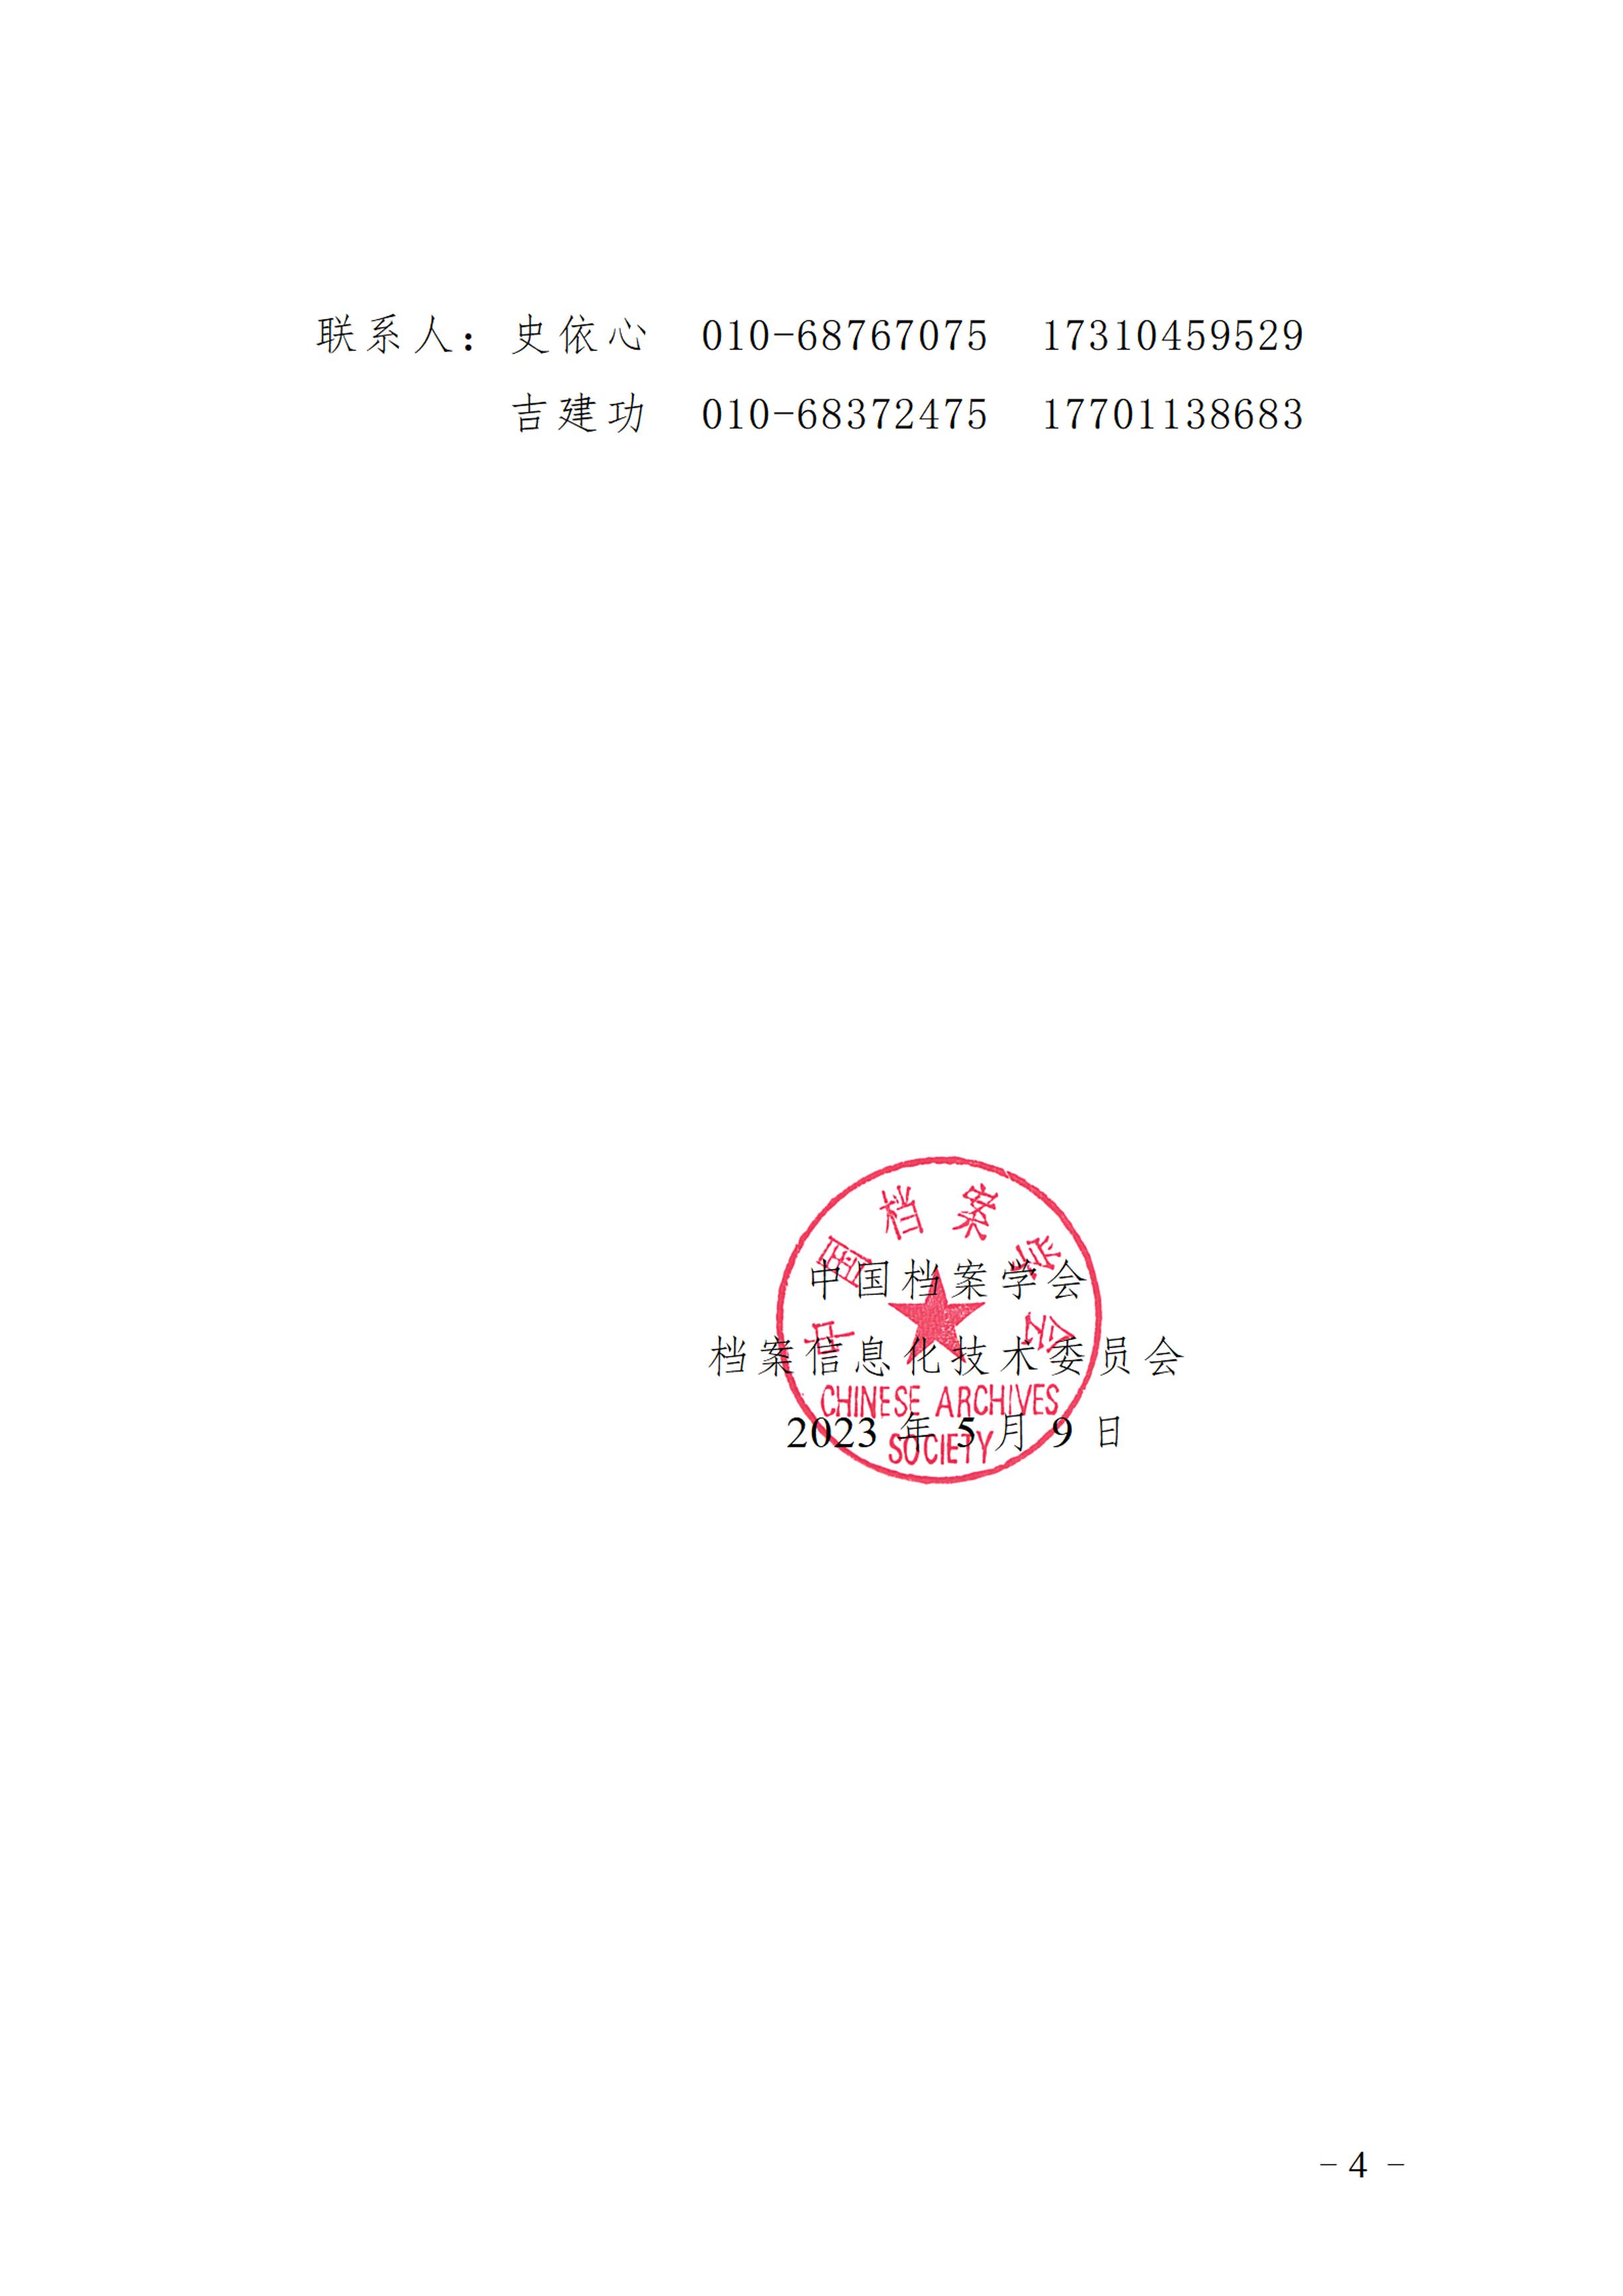 中国档案学会档案信息化技术委员会关于征集2023年学术论坛论文的通知-3